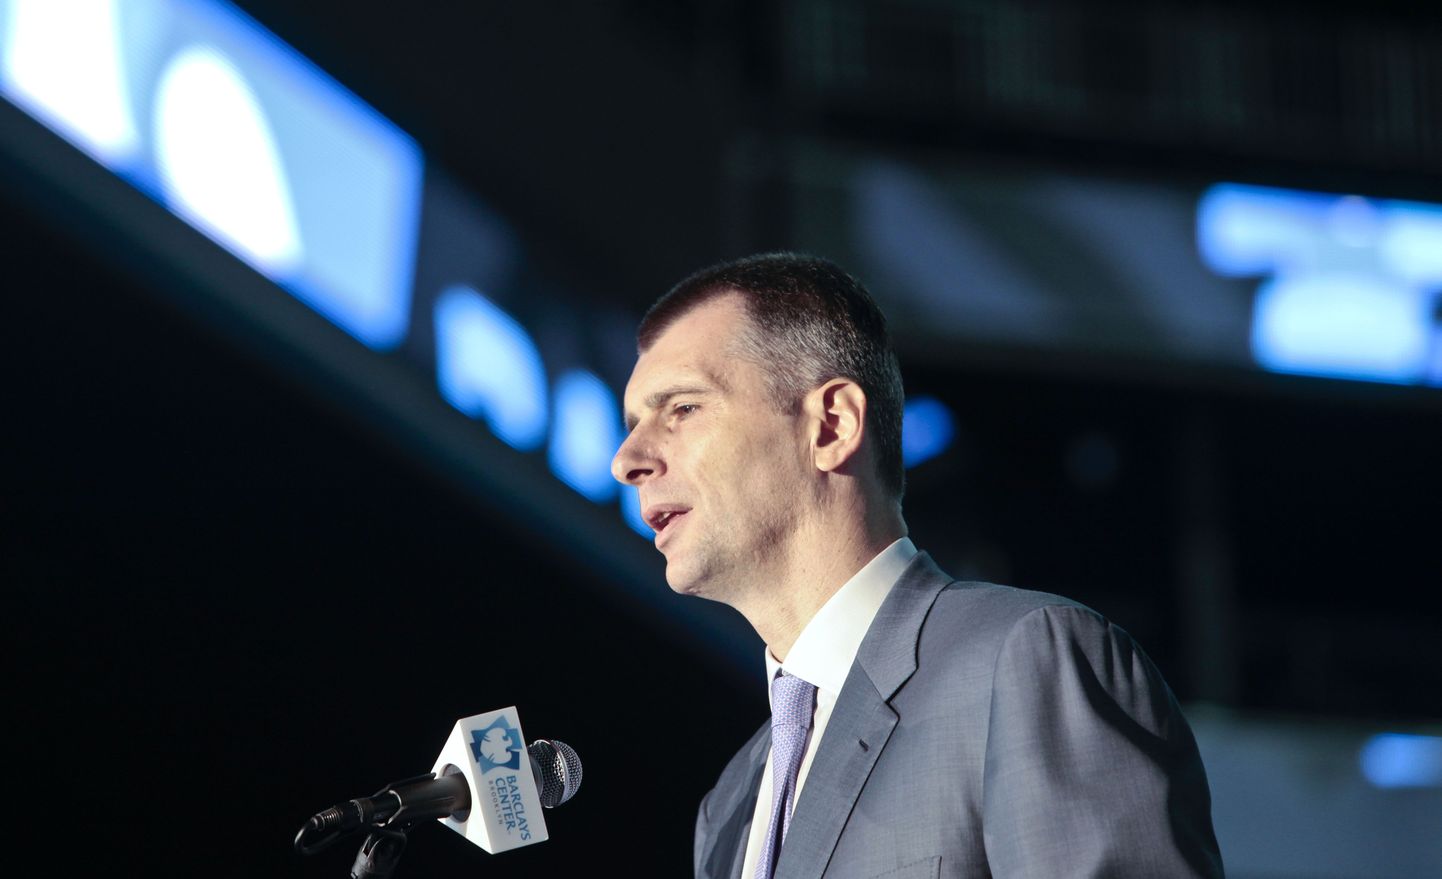 Михаил Прохоров выступает на открытии арены "Бруклин Нетс" в Нью-Йорке.